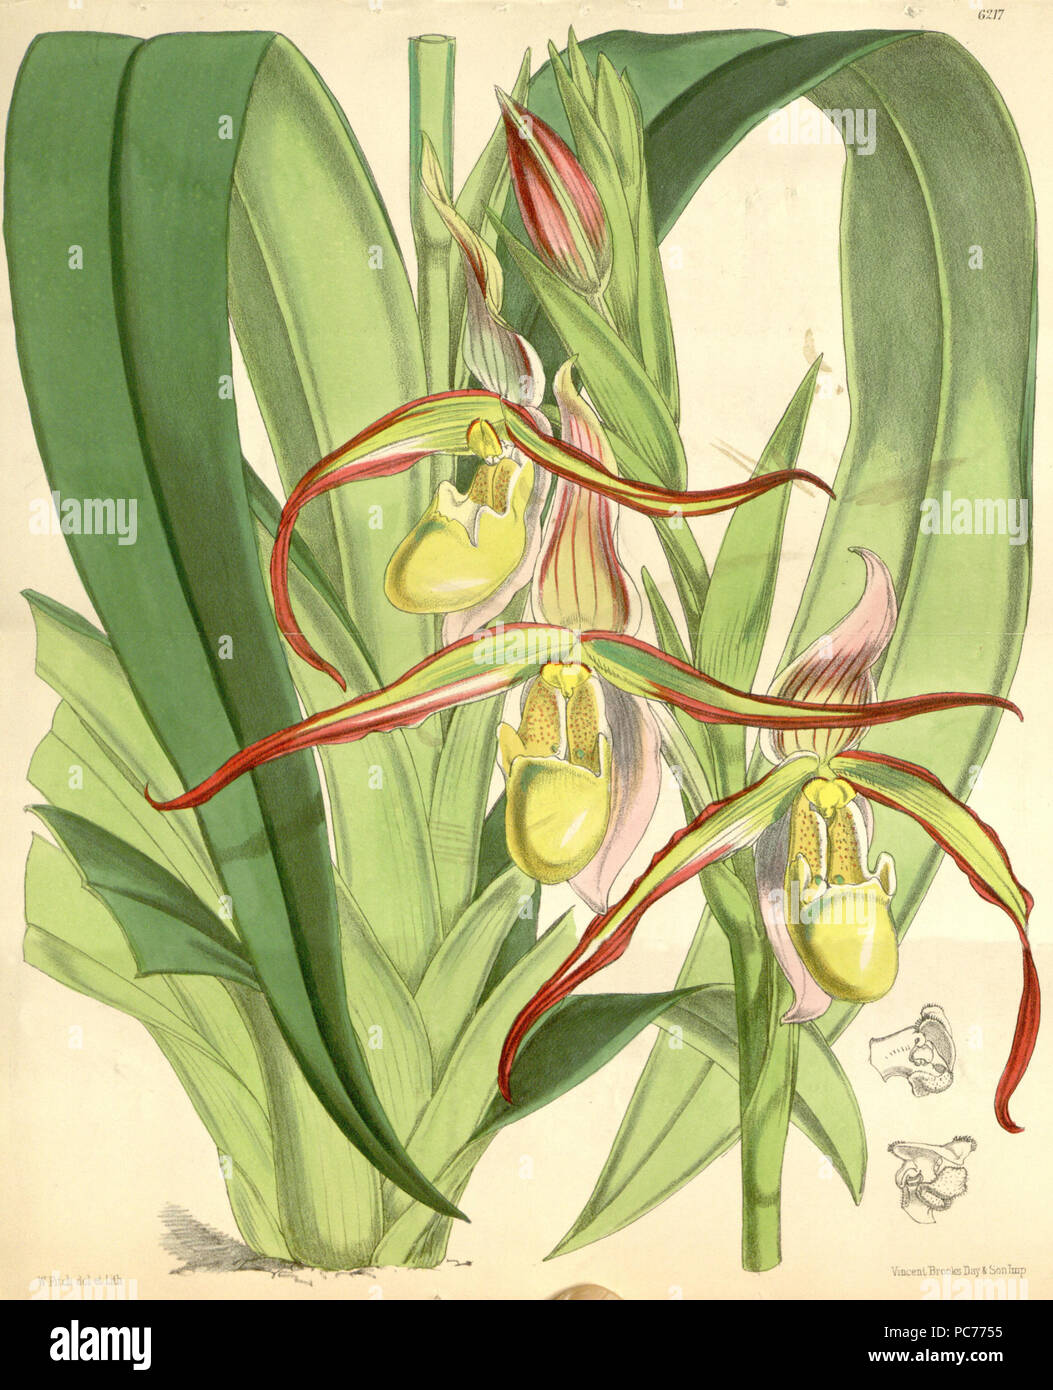 481 Phragmipedium longifolium (as Cypripedium roezlii) - Curtis' 102 (Ser. 3 no. 32) pl. 6217 (1876) Stock Photo